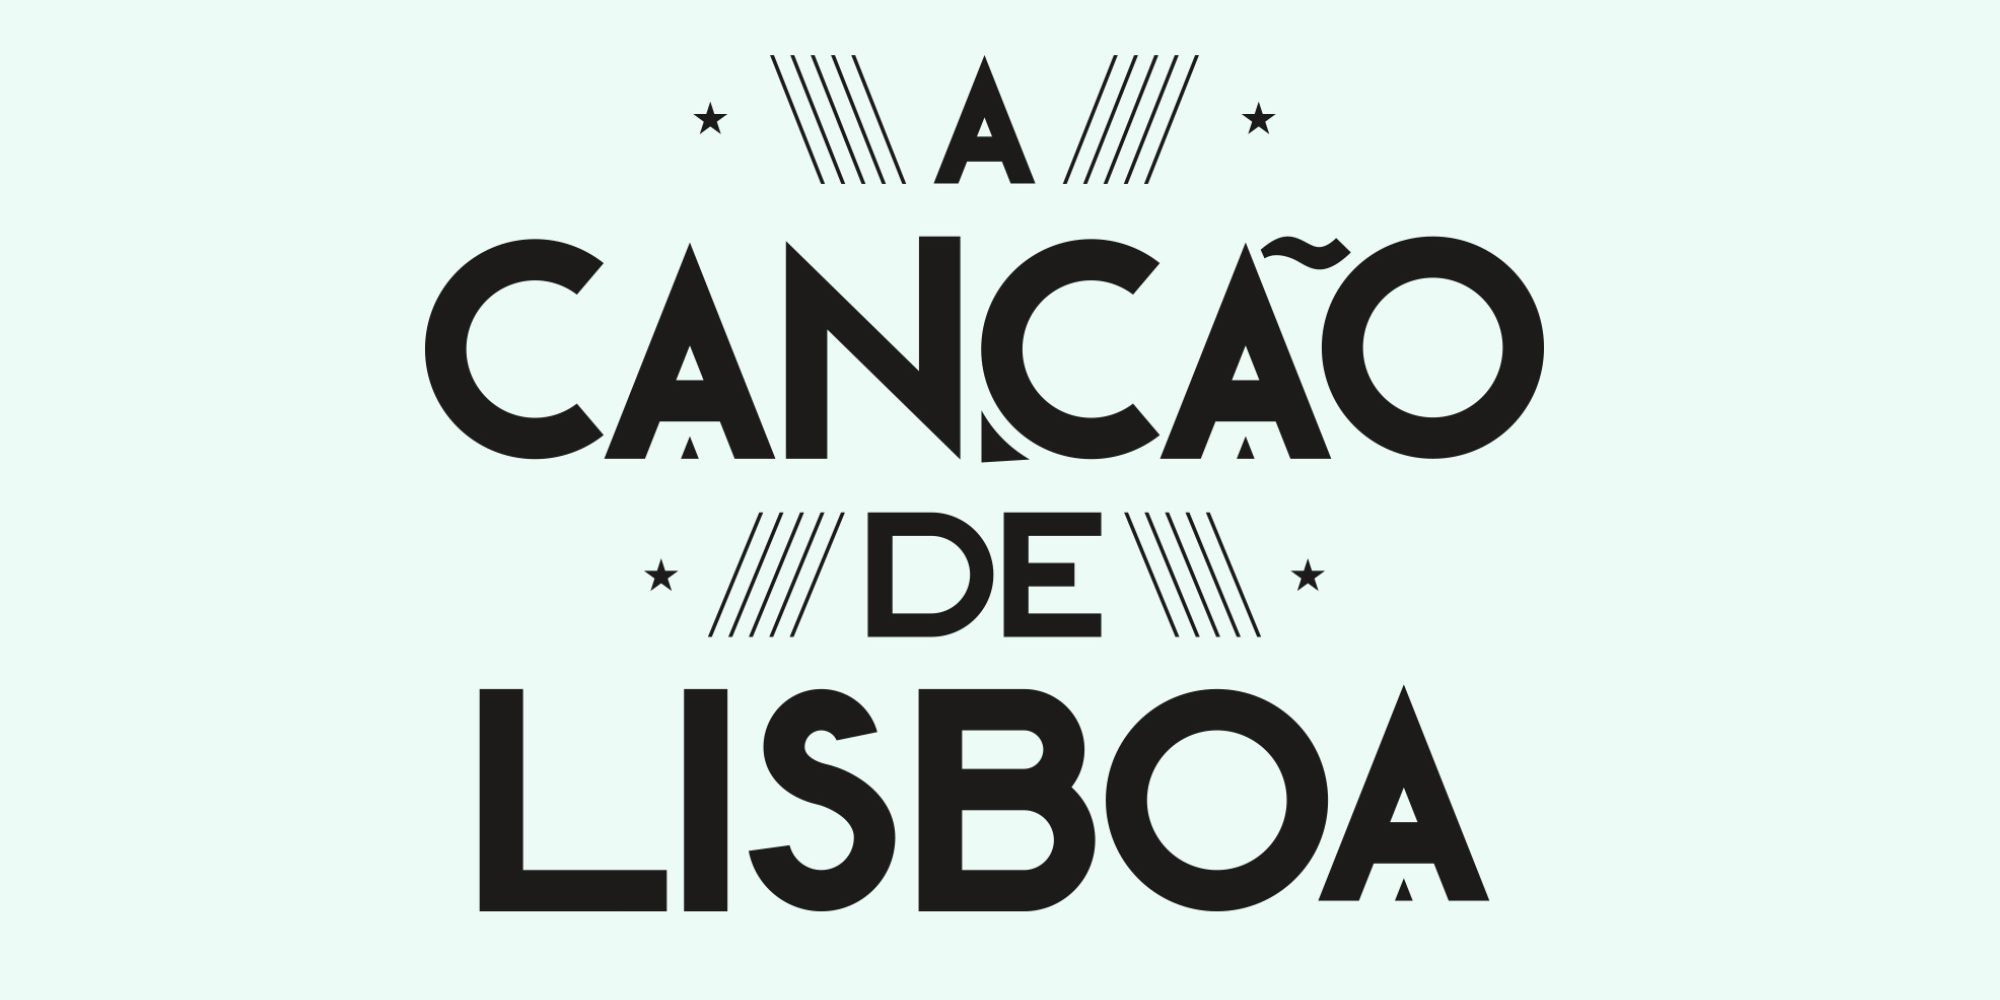  Conheça o trailer oficial do remake de «A Canção de Lisboa»